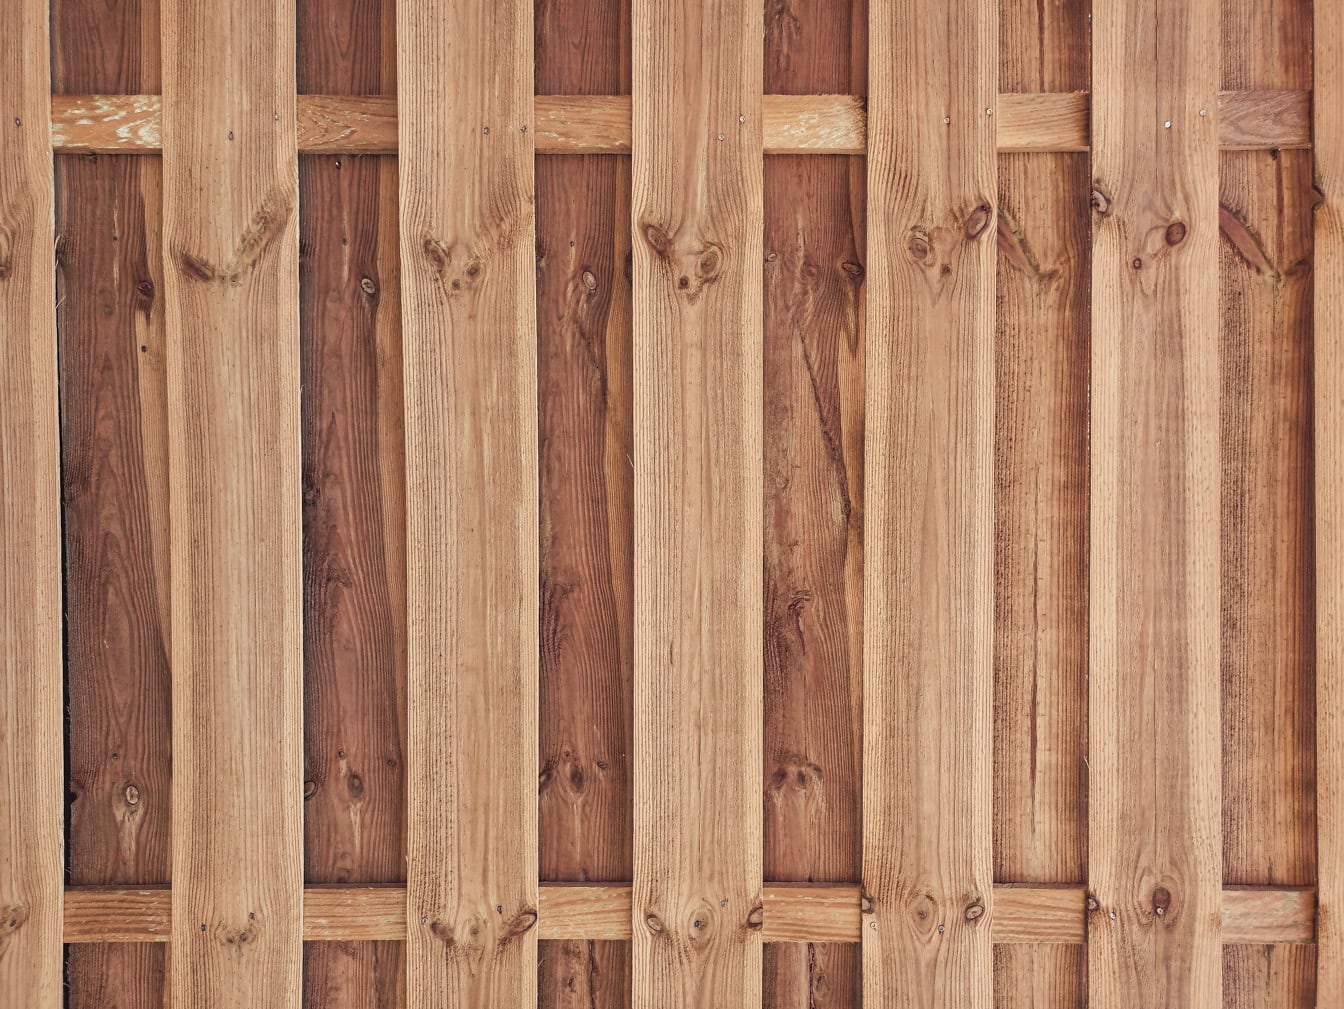 Drveni panel izrađen od vertikalno složenih letvica od tvrdog drveta u obliku drvene ograde s pozadinom od čvorastih dasaka